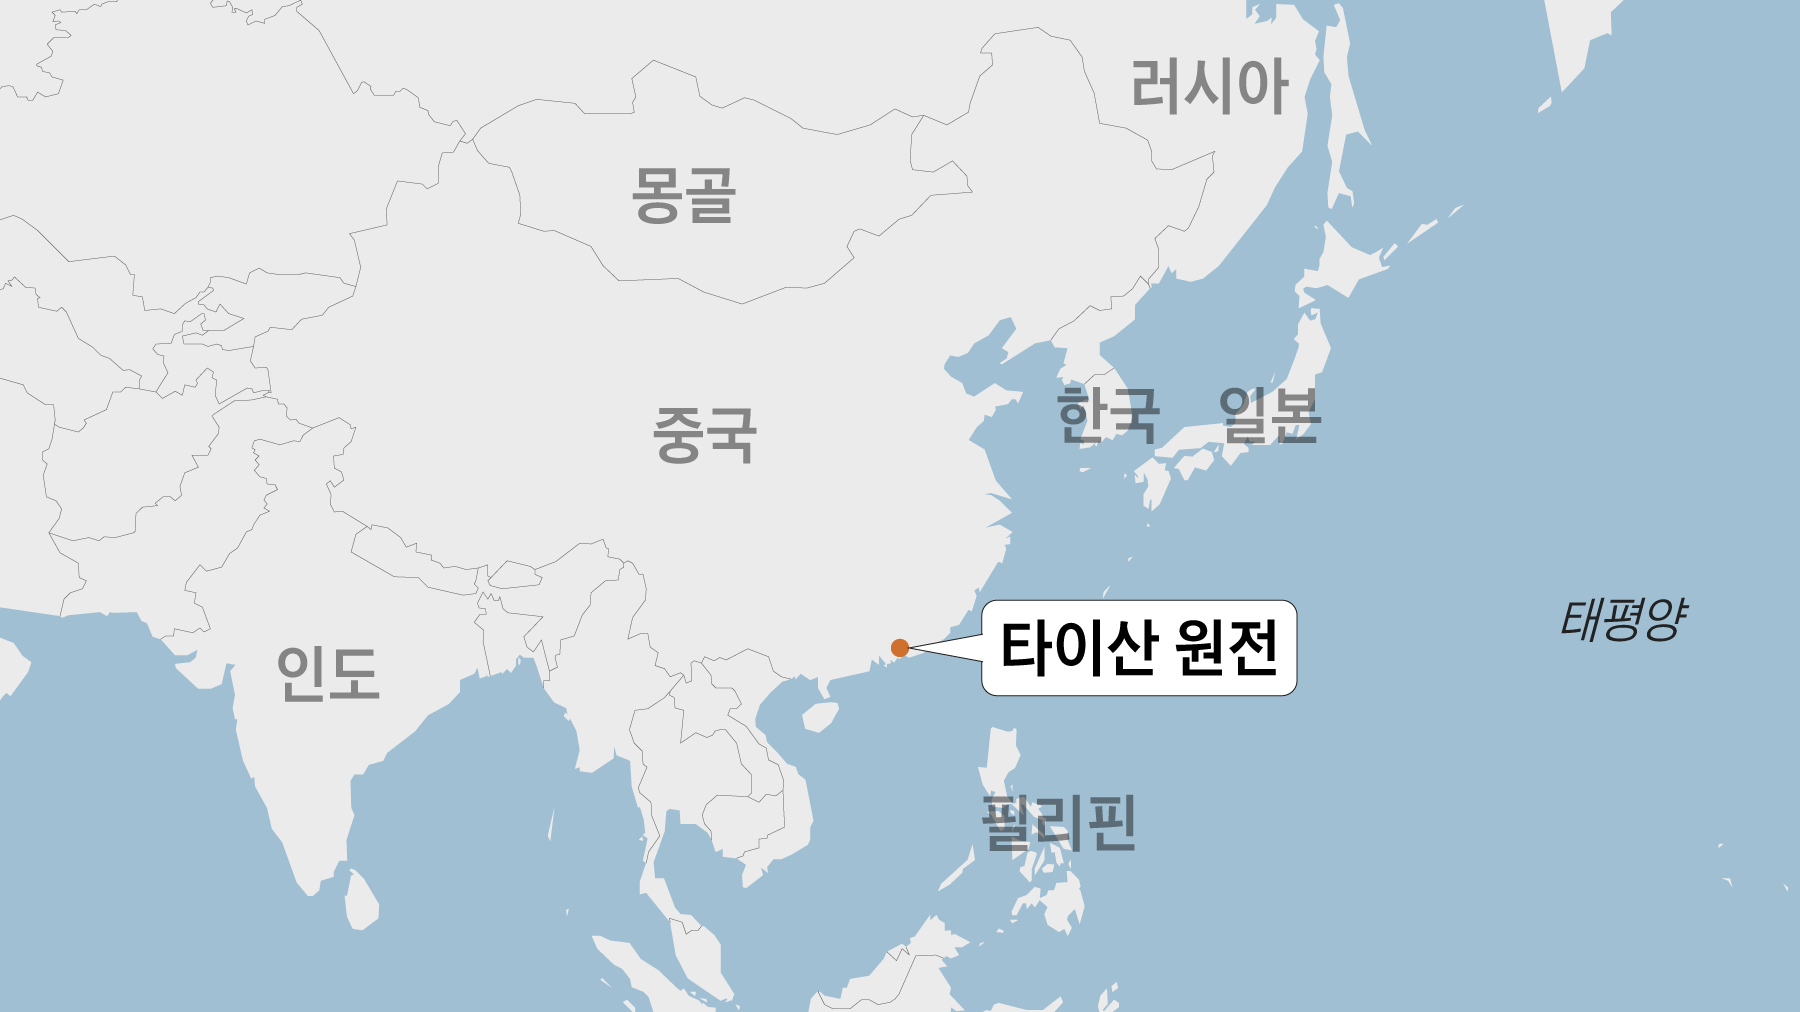 Cnn “美 정부, 中 광둥성 원전 방사능 유출 조사” - 조선일보